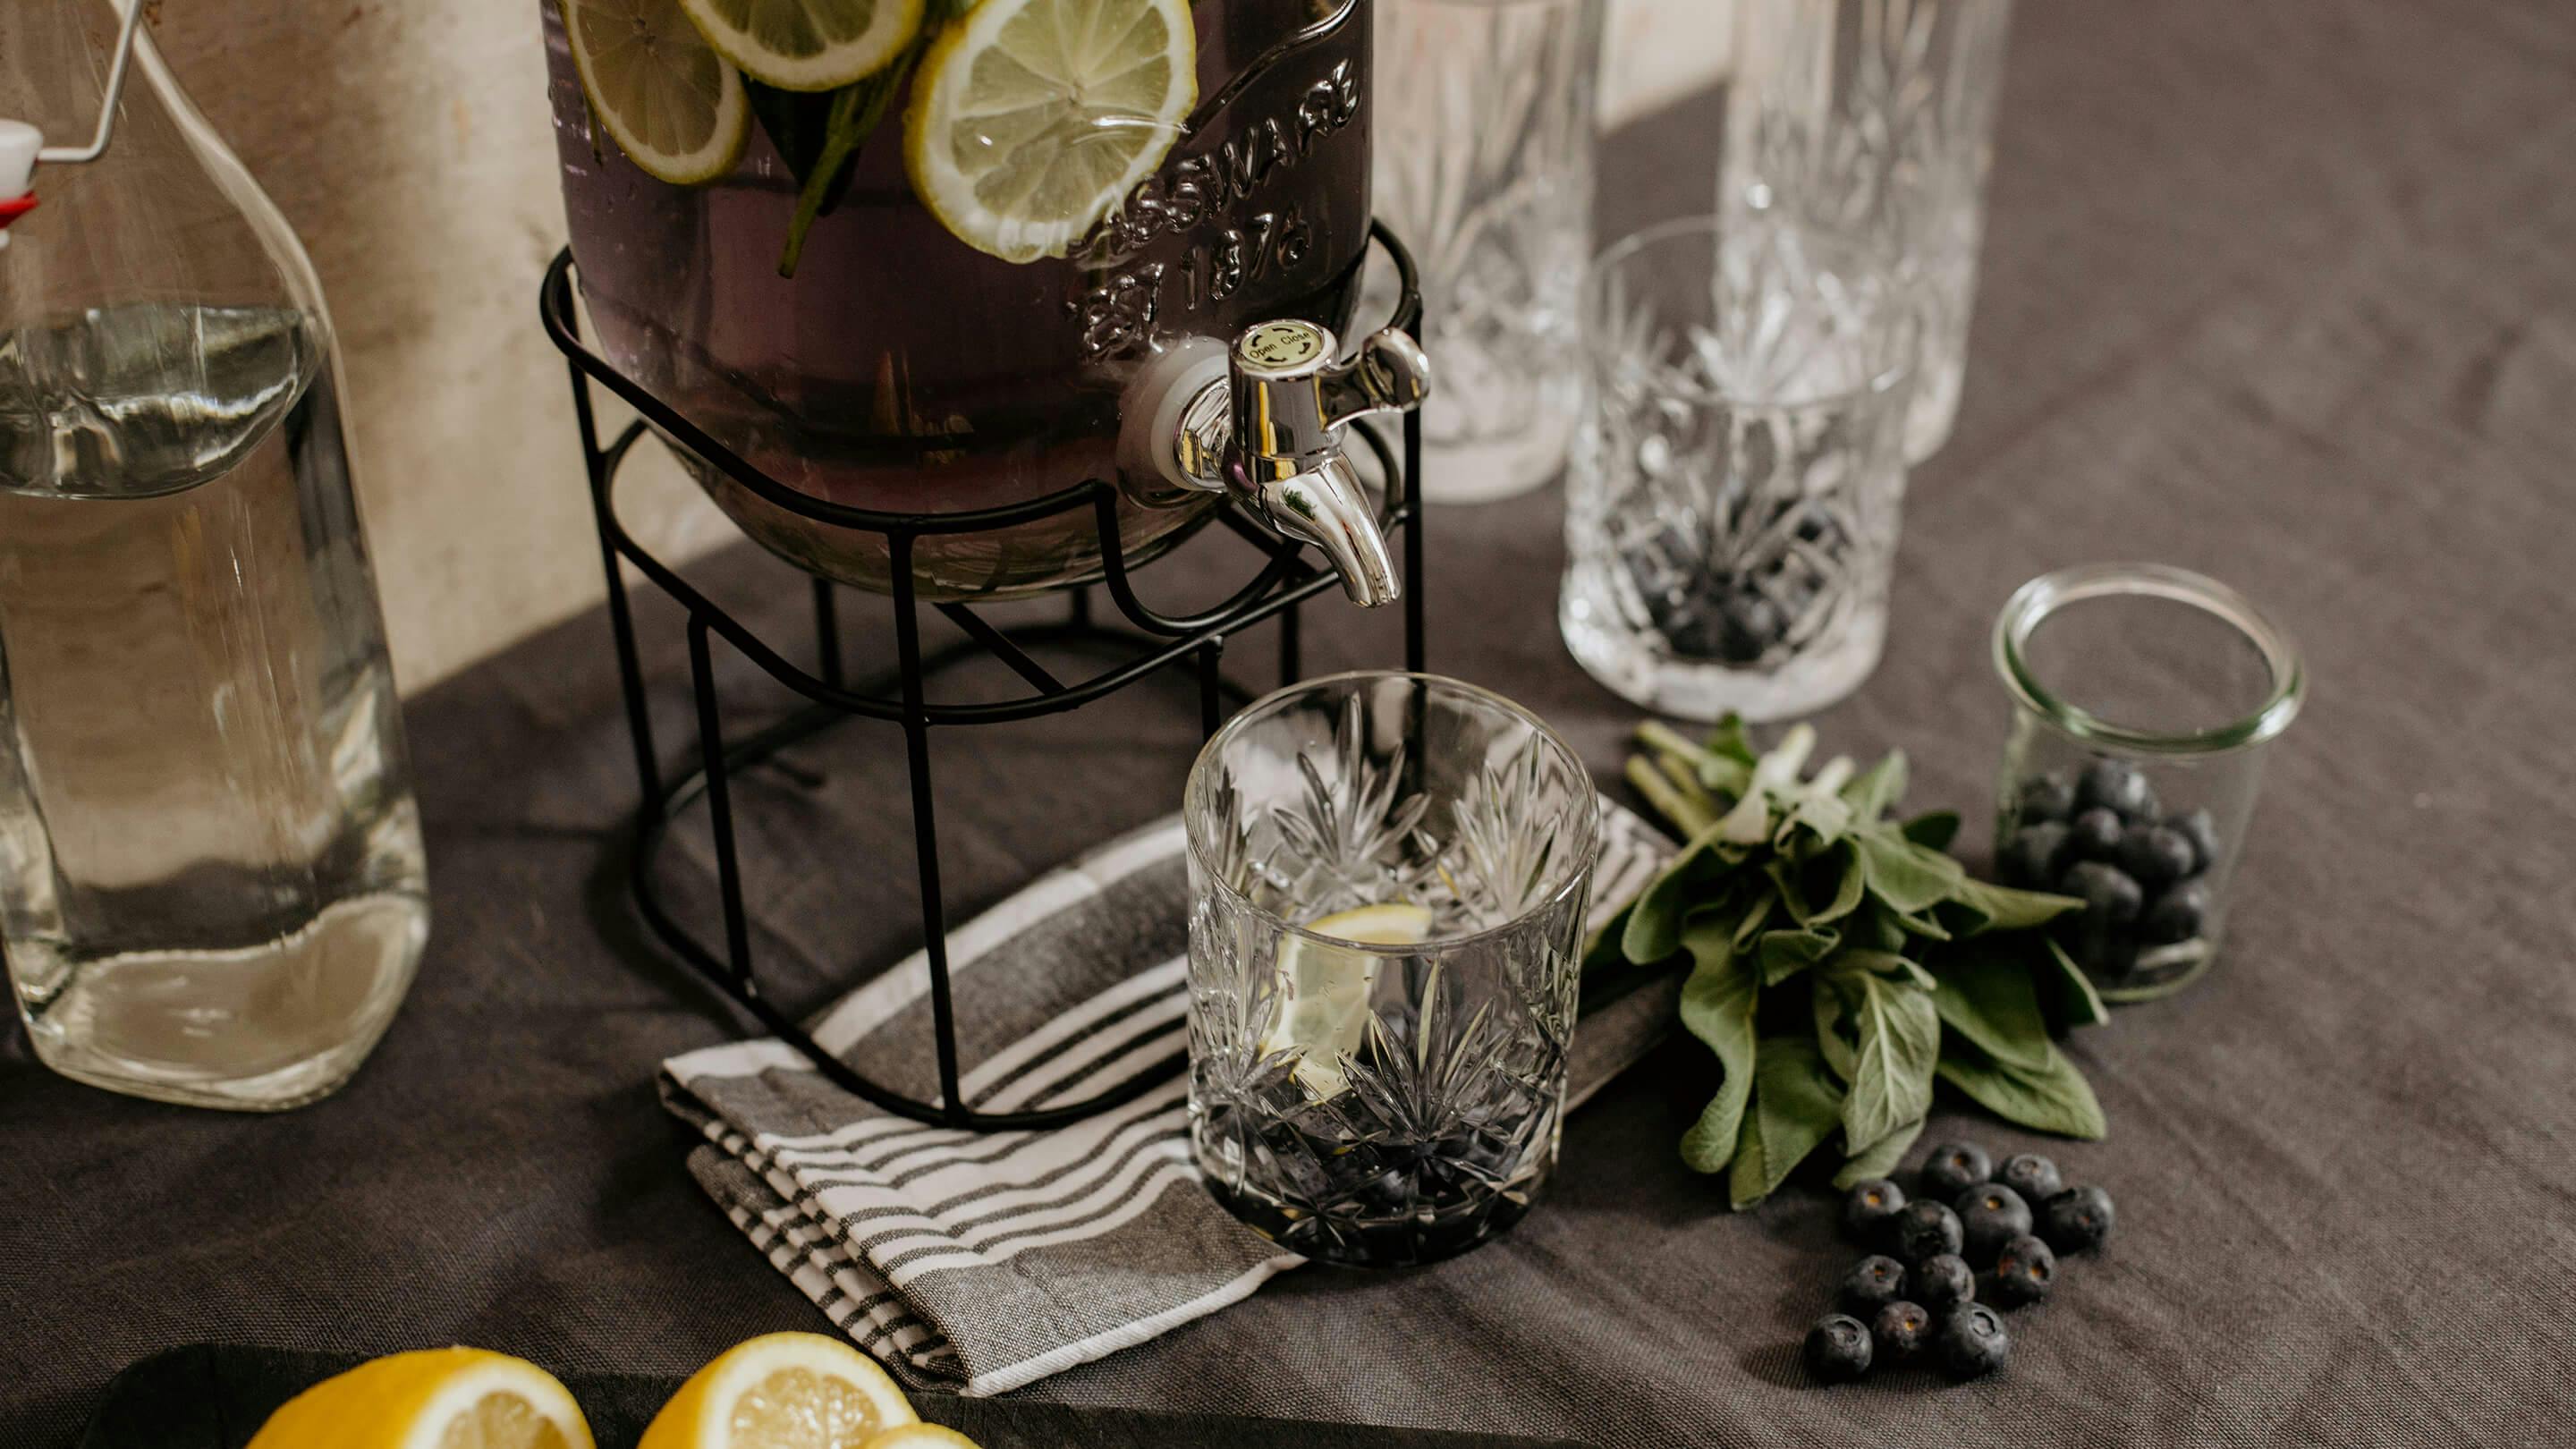 Gin-Tonic-Trendgetränk (Marke der Gläser und Getränkespender: Butlers).